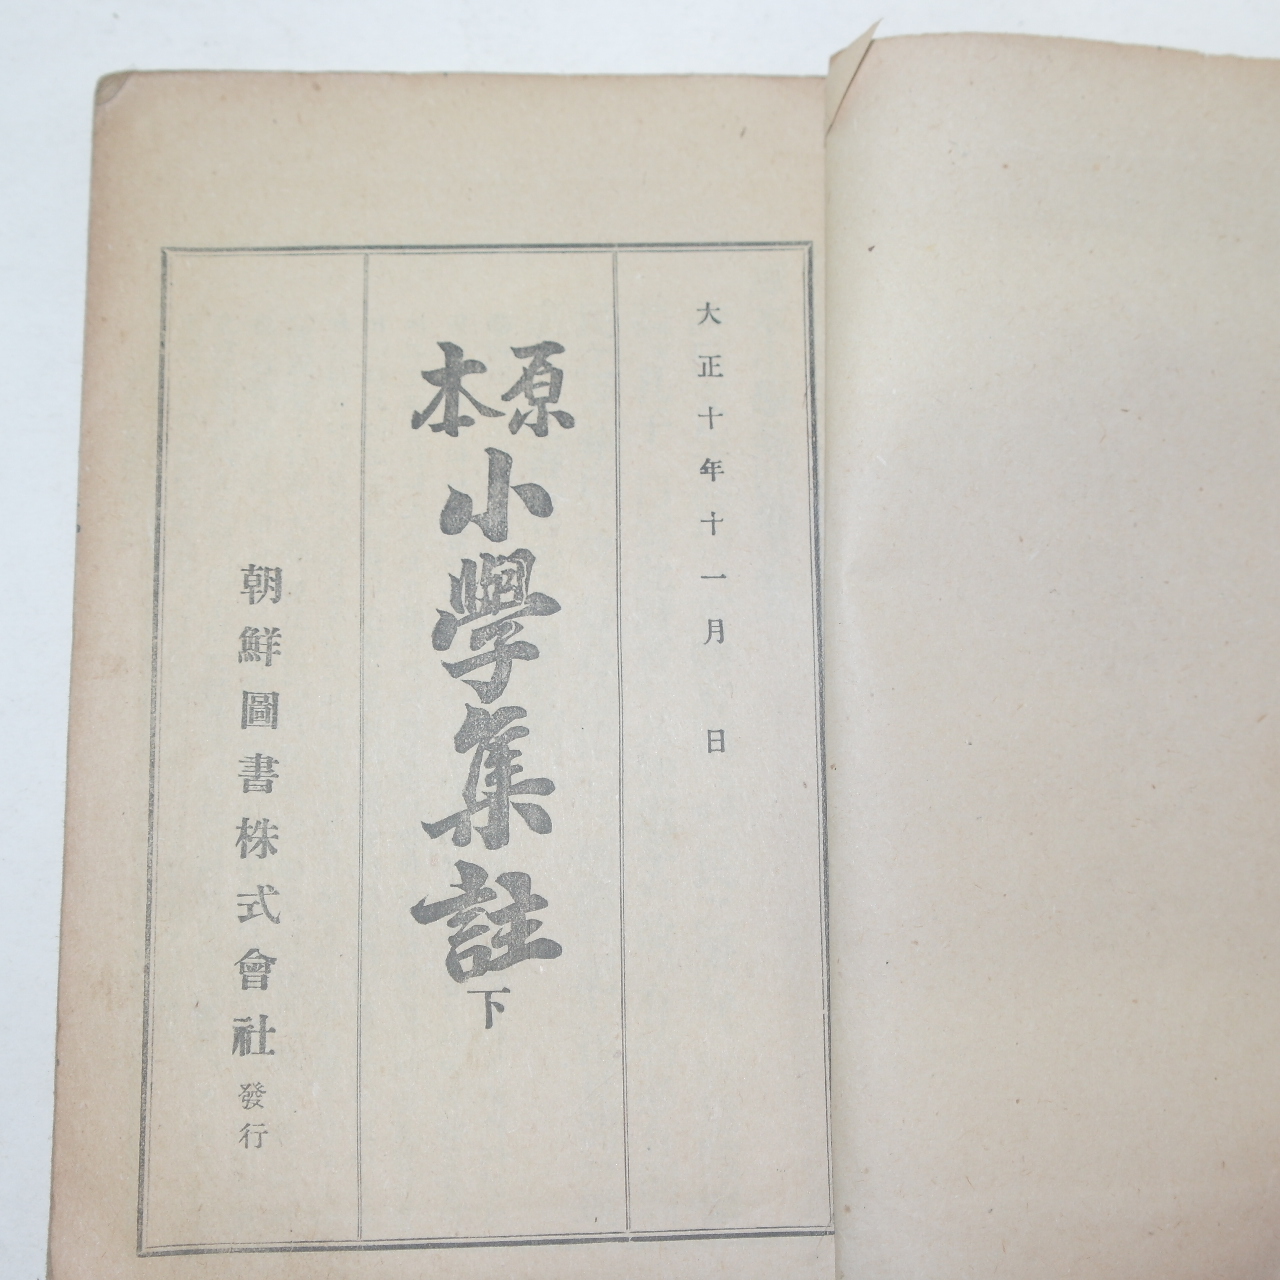 1924년 조선도서간행 원본소학집주(原本小學集註)하권 1책